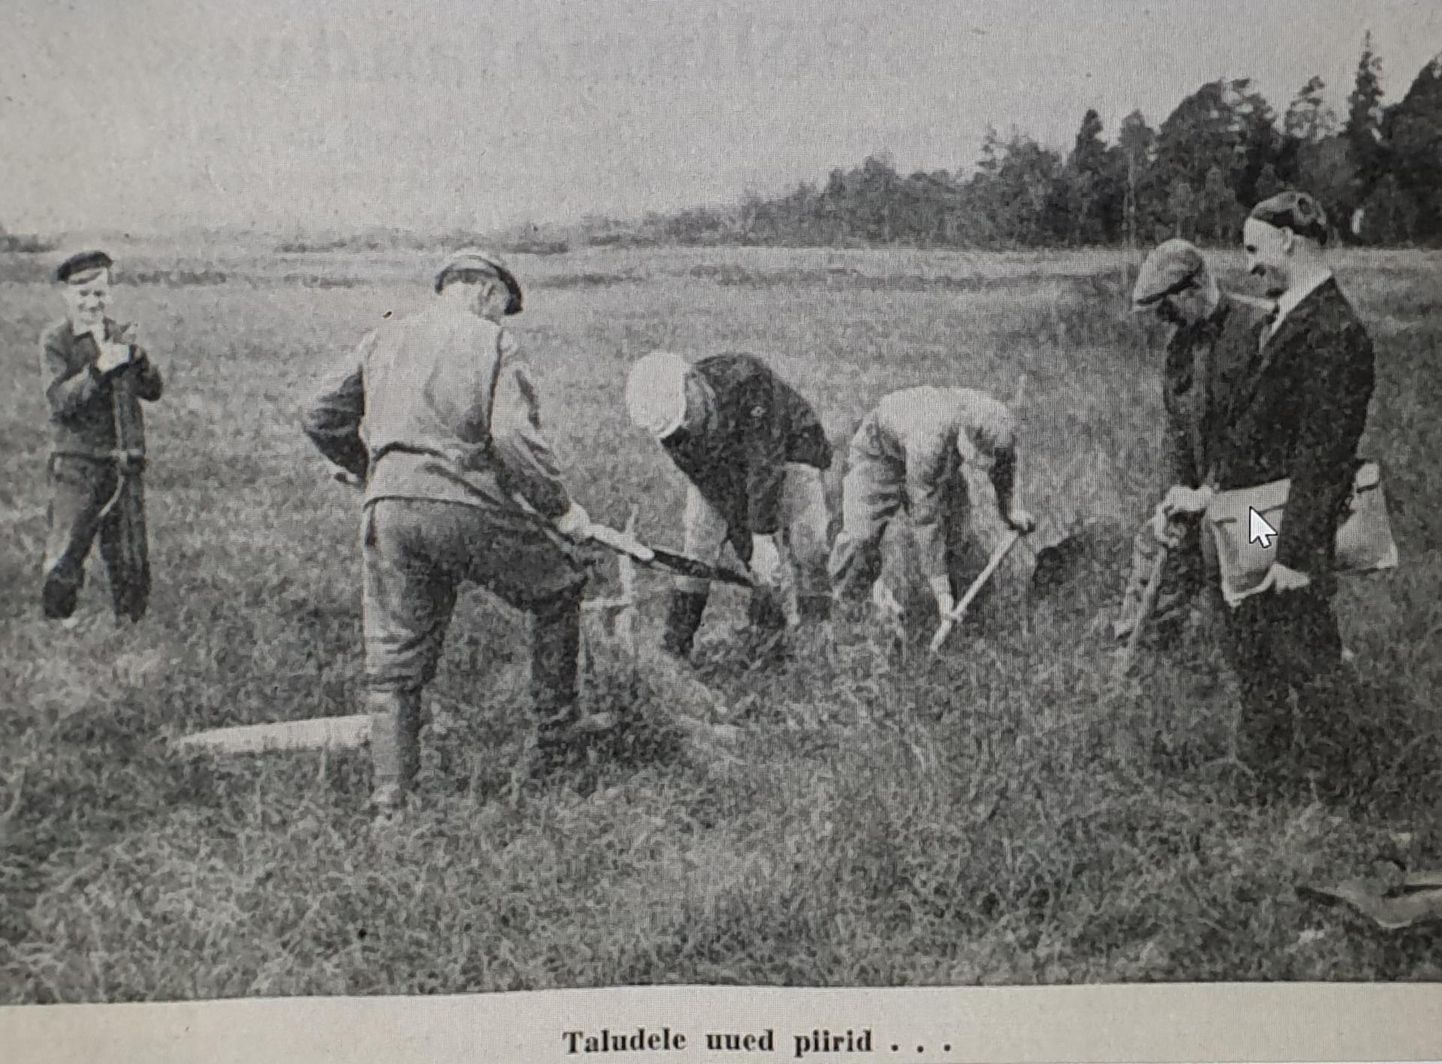 Ajakiri Eesti Talu esikaas 1940. aasta 23. novembrist. Fotol allkiri "Taludele uued piirid..."